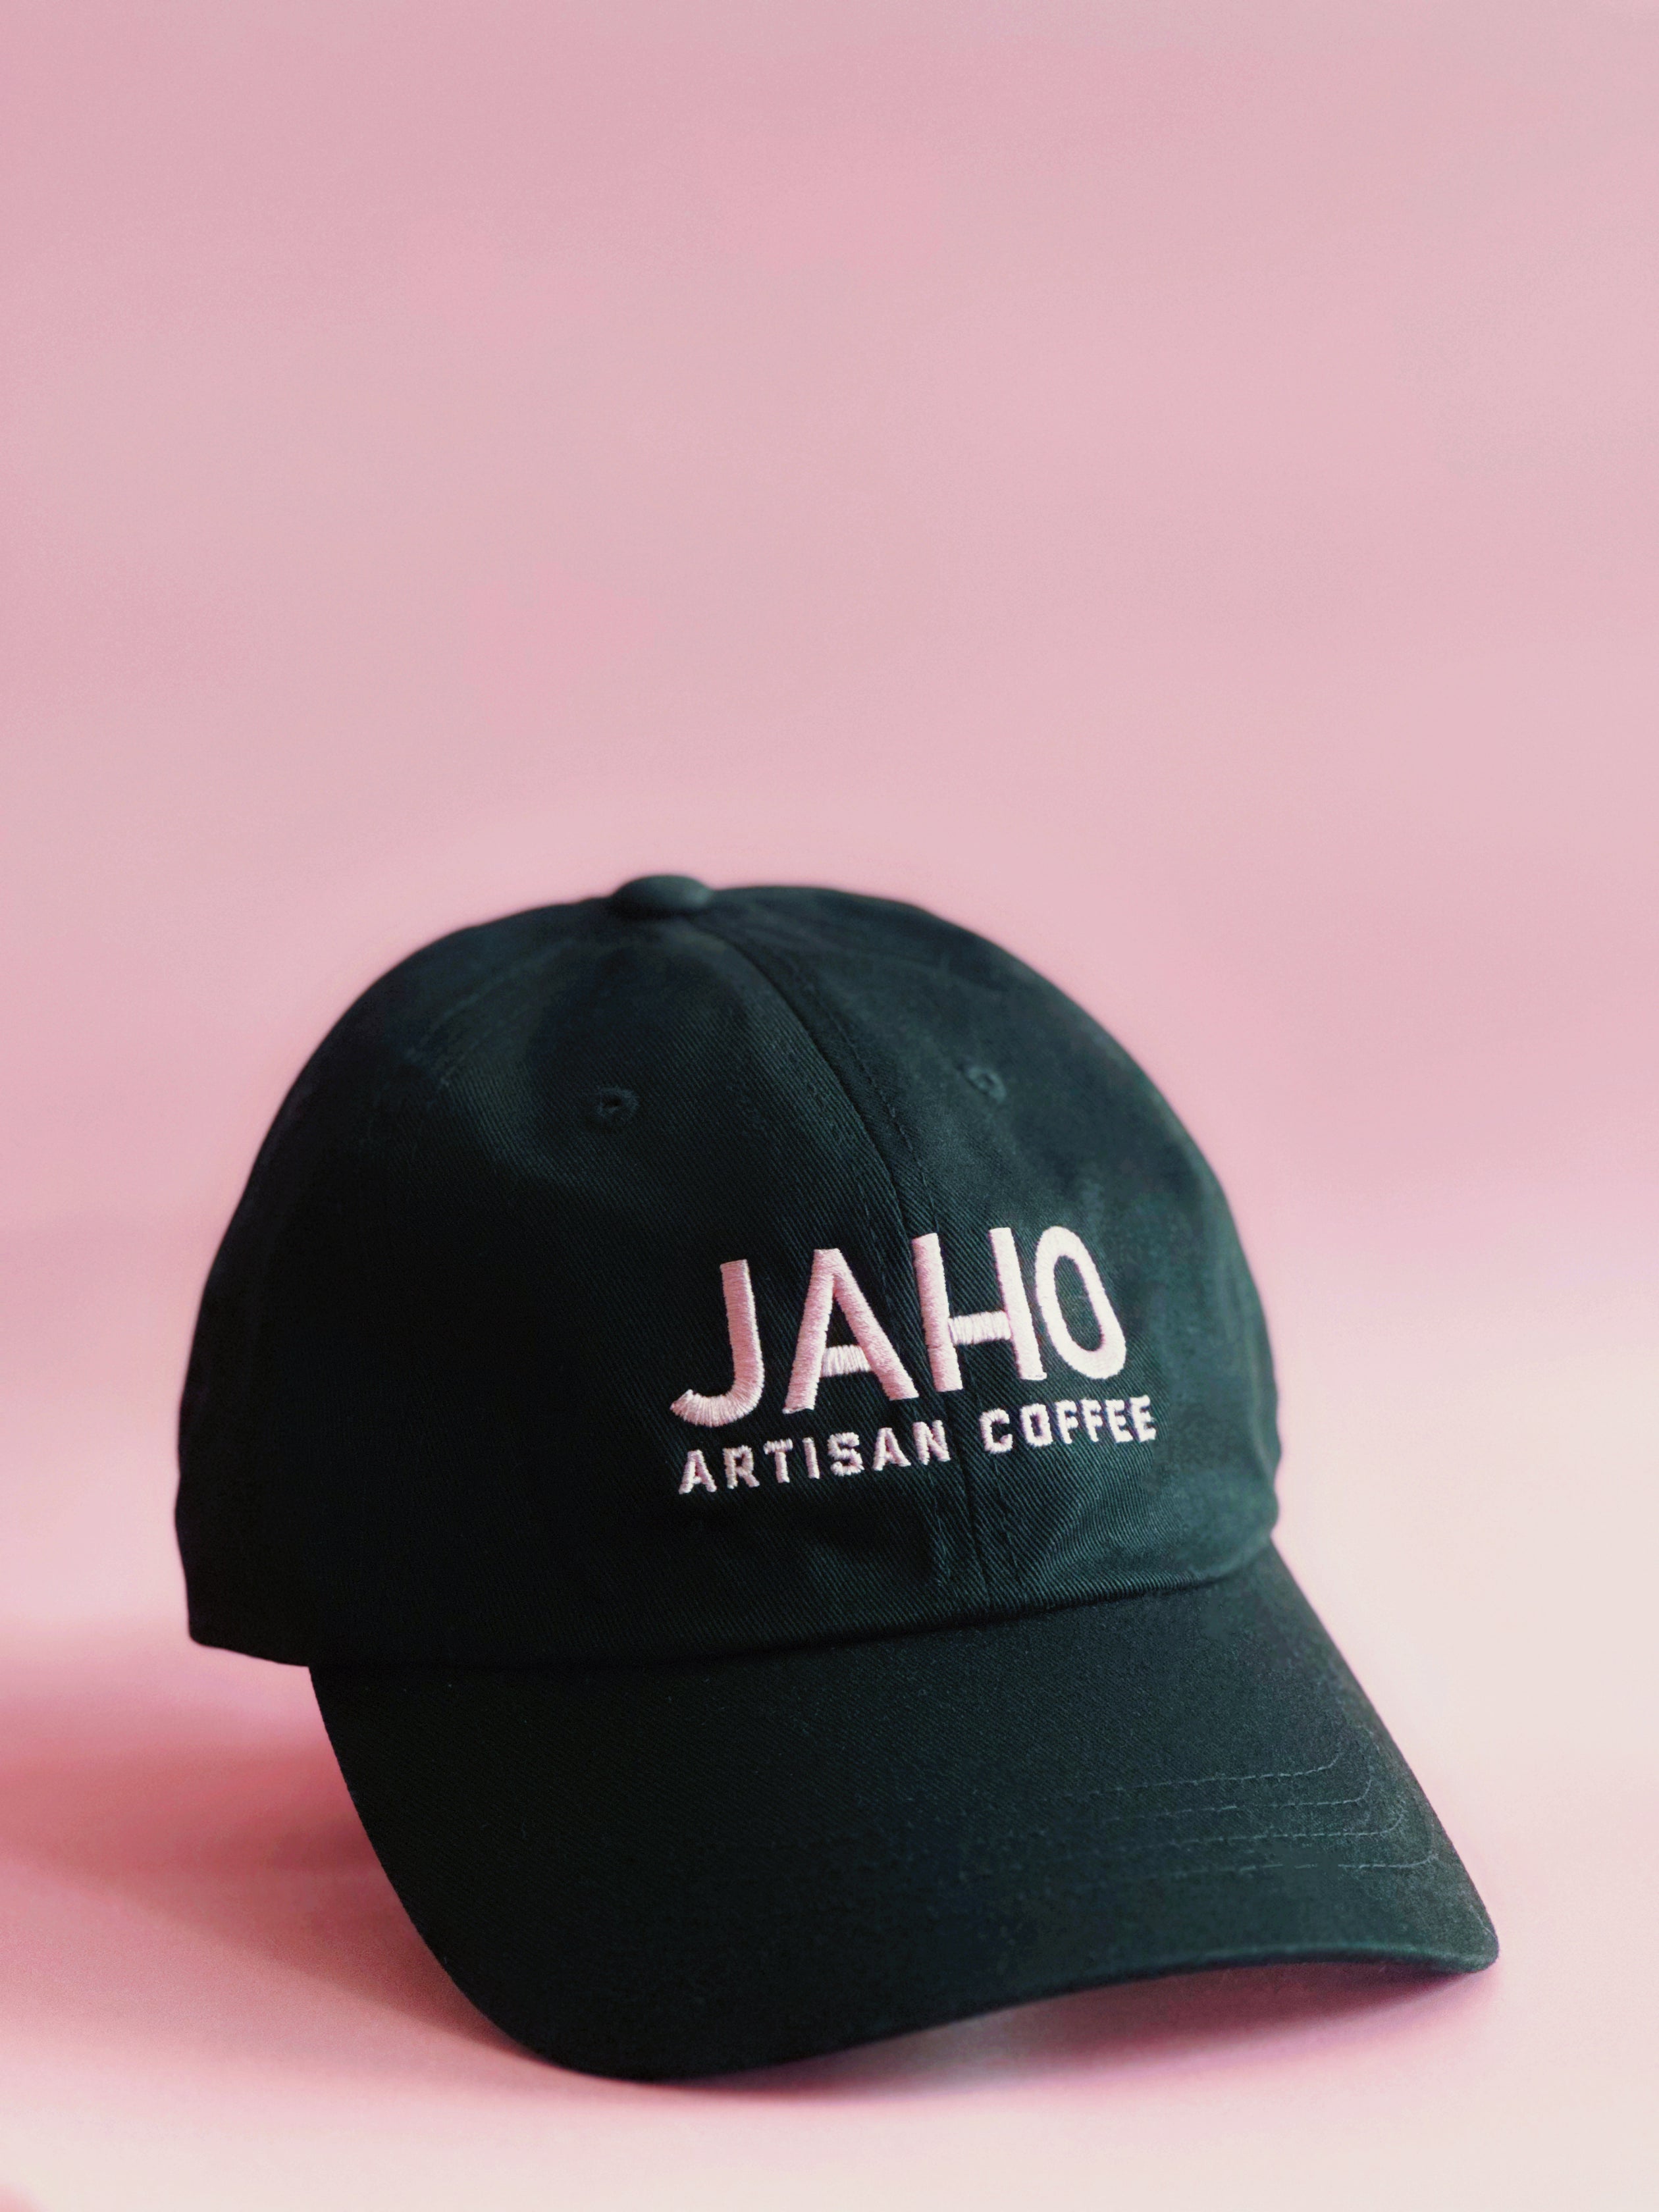 Jaho Pink Cap - Jaho Coffee Roaster